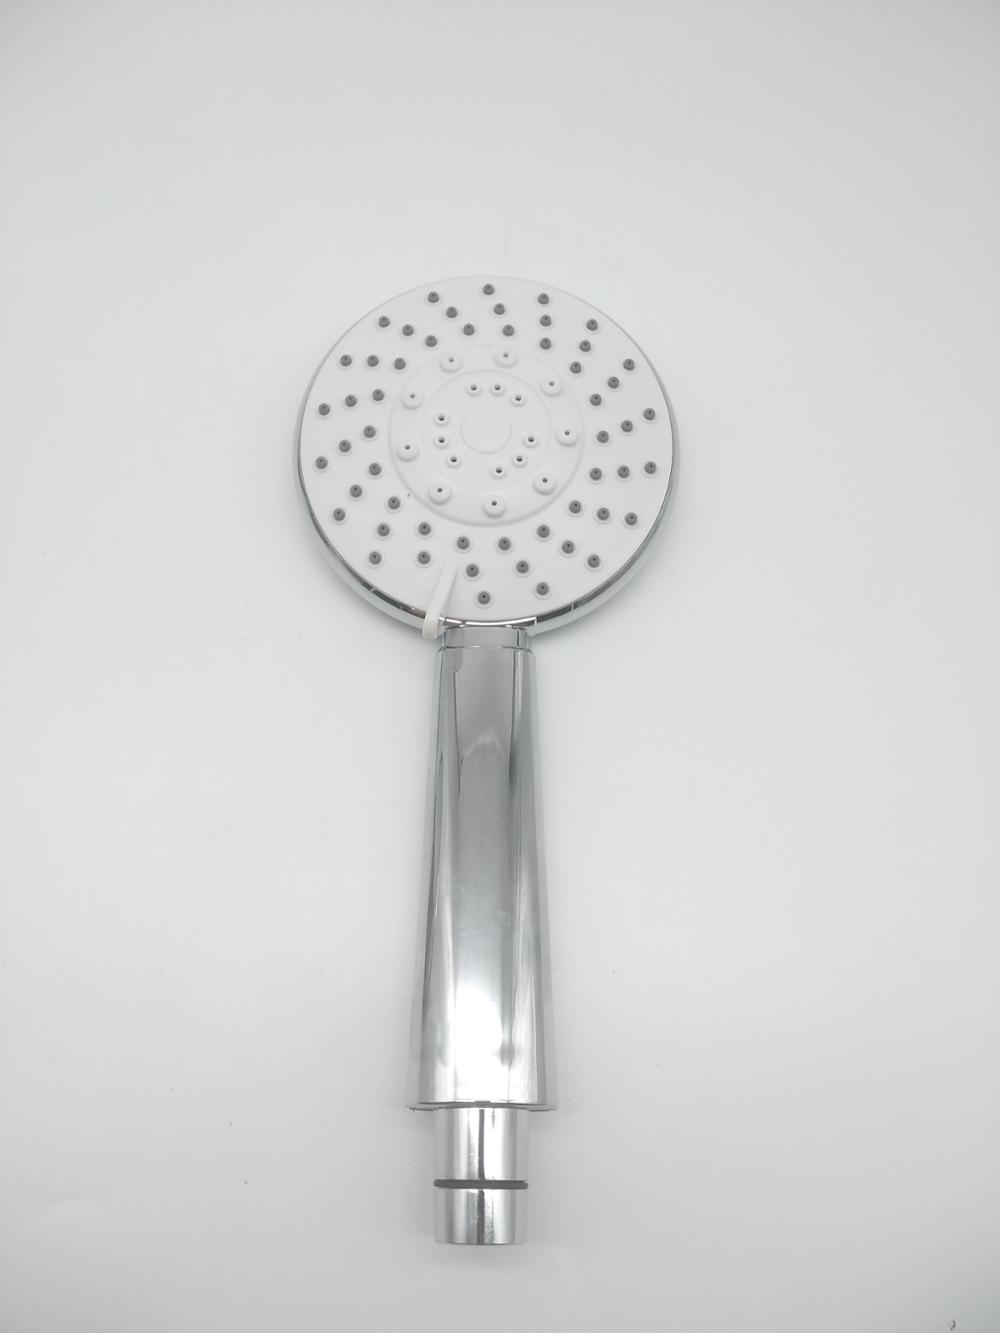 Ручной душ с 5 функциями ABS